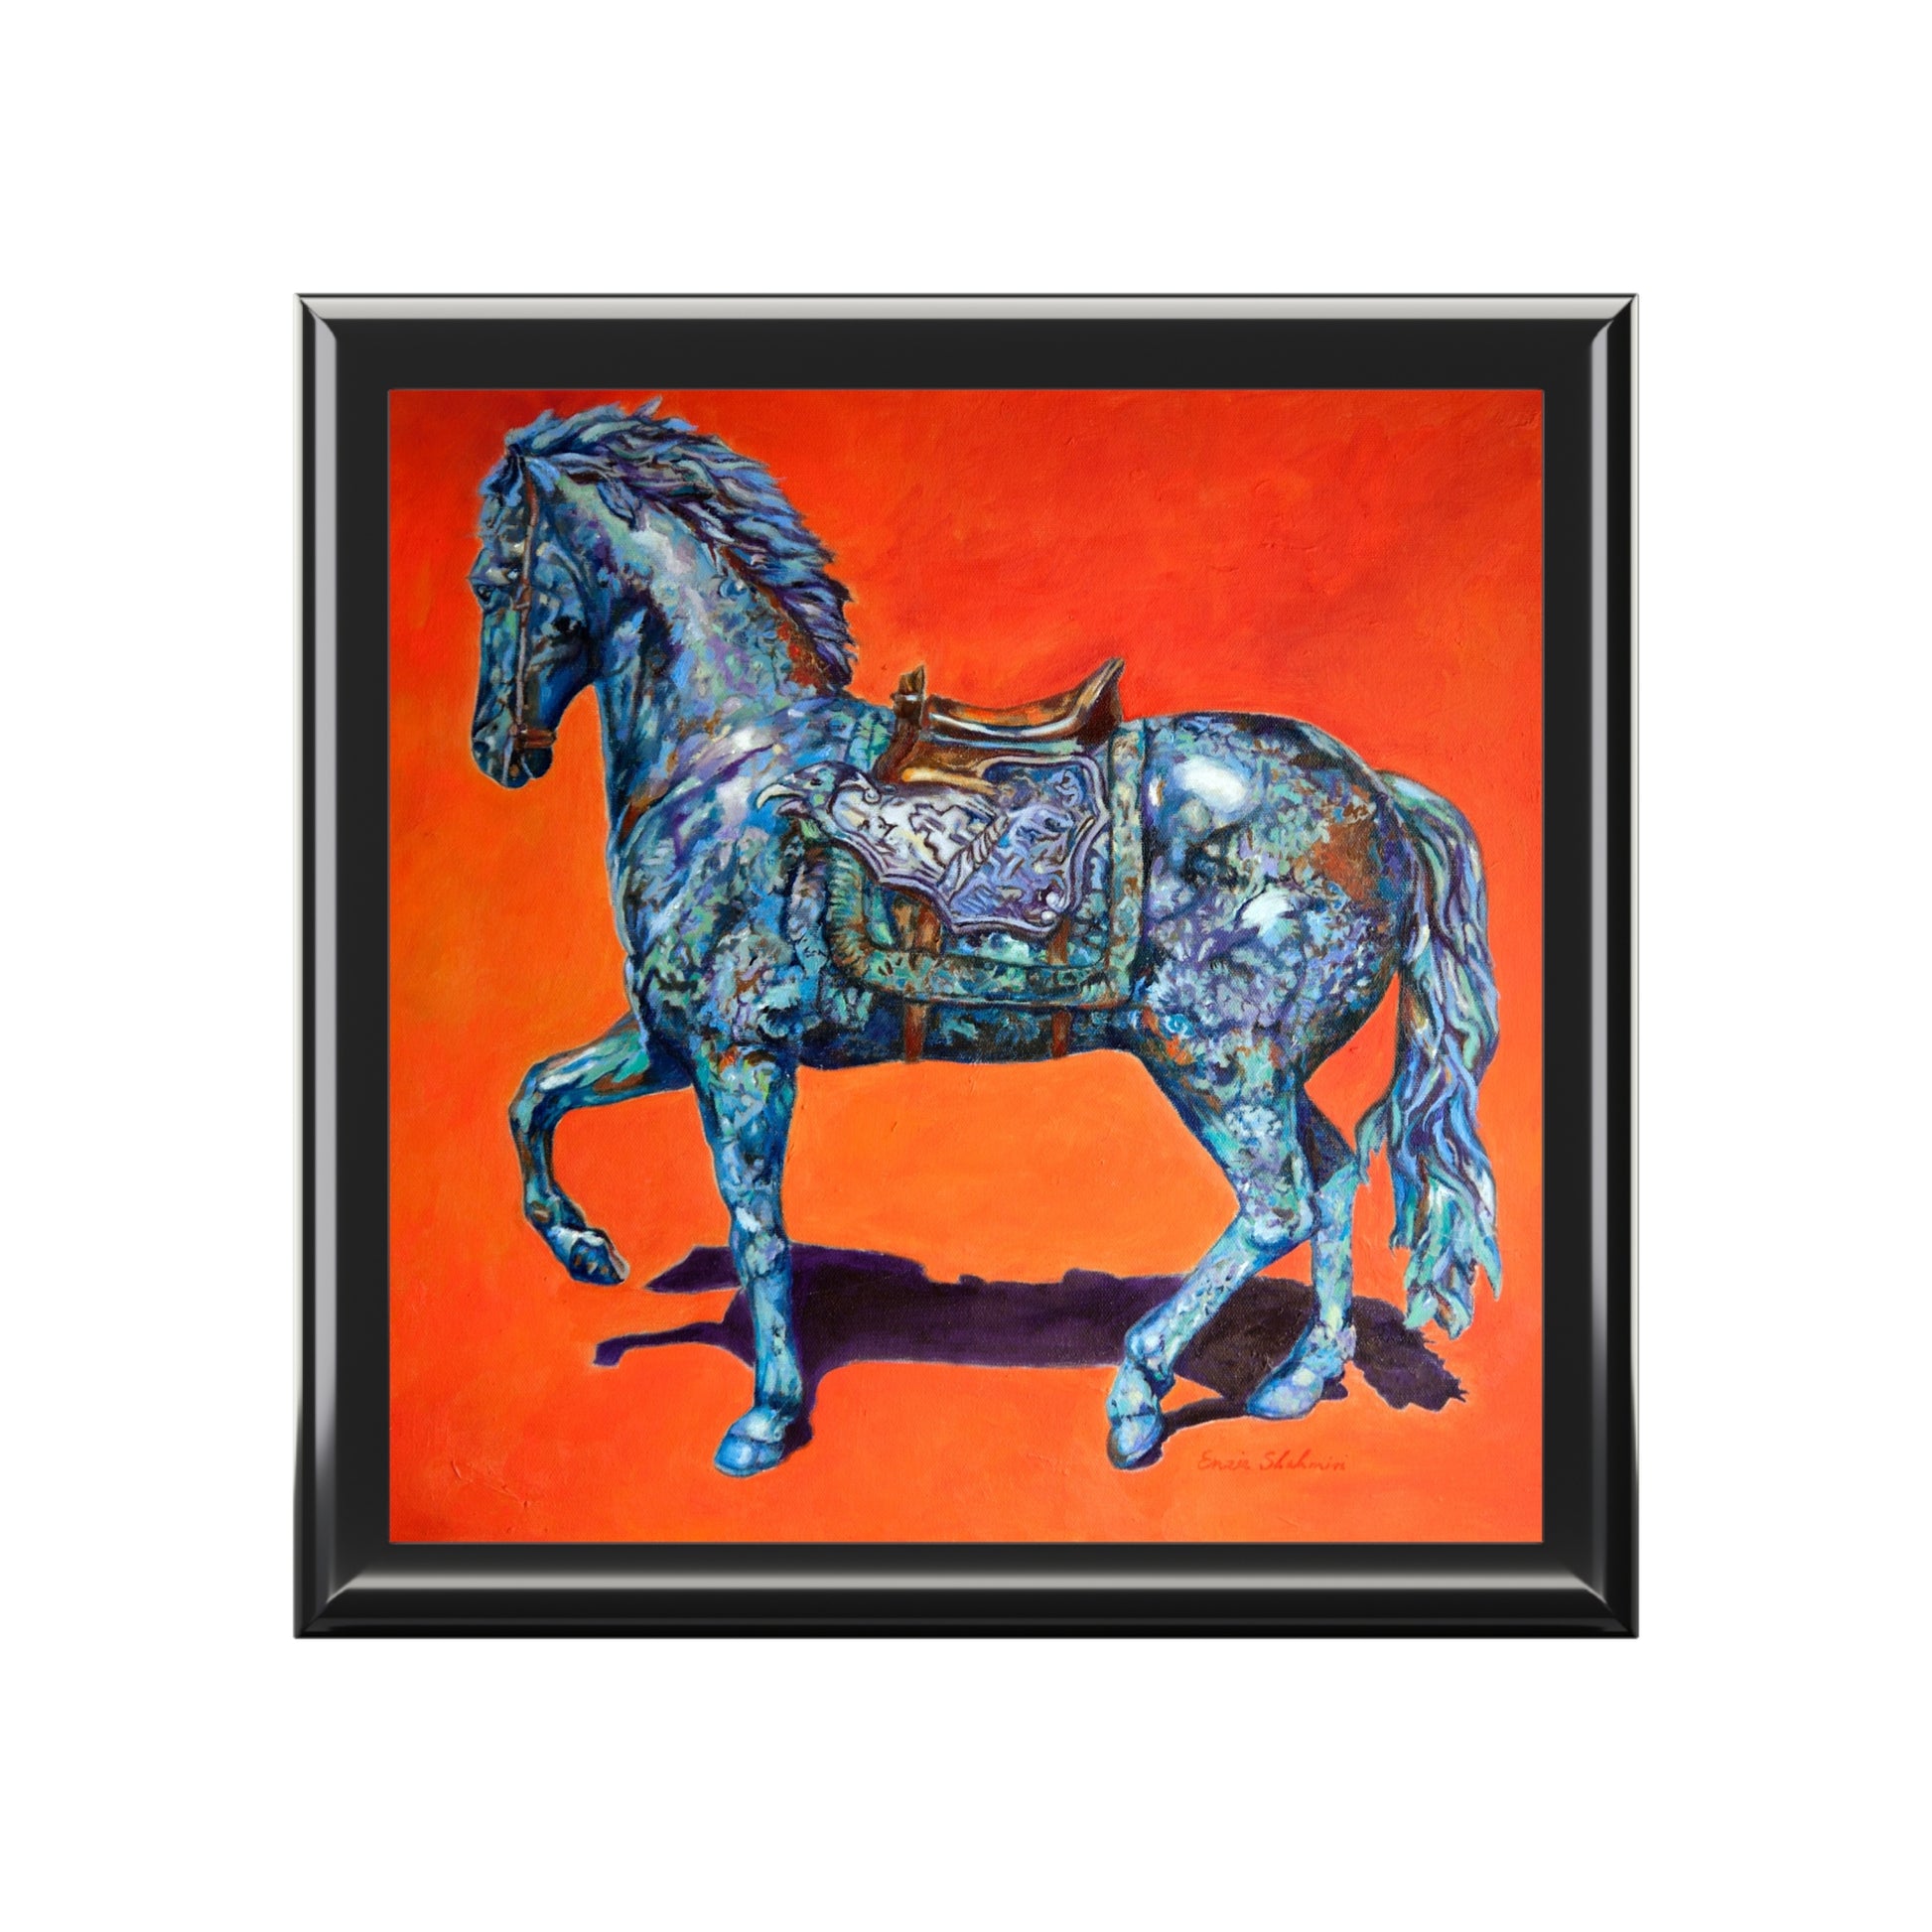 Keepsake/Jewelry Box - Indigo Horse - Wood Lacquer Box front